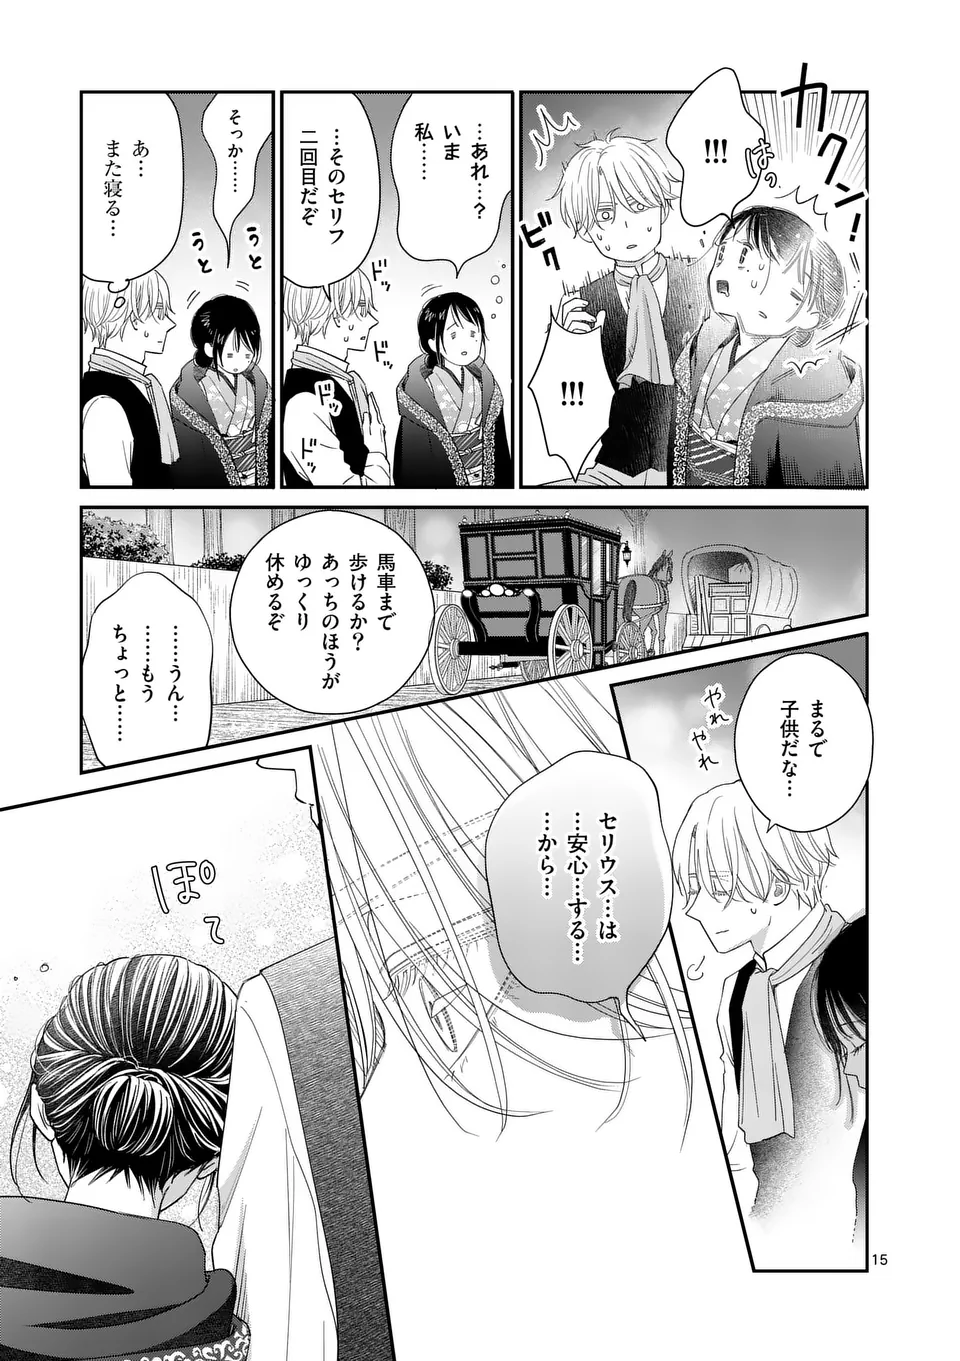 Makizoe de Isekai ni Yobidasareta no de, Sekai Kanmushi shite Wagashi Tsukurimasu - Chapter 6 - Page 15